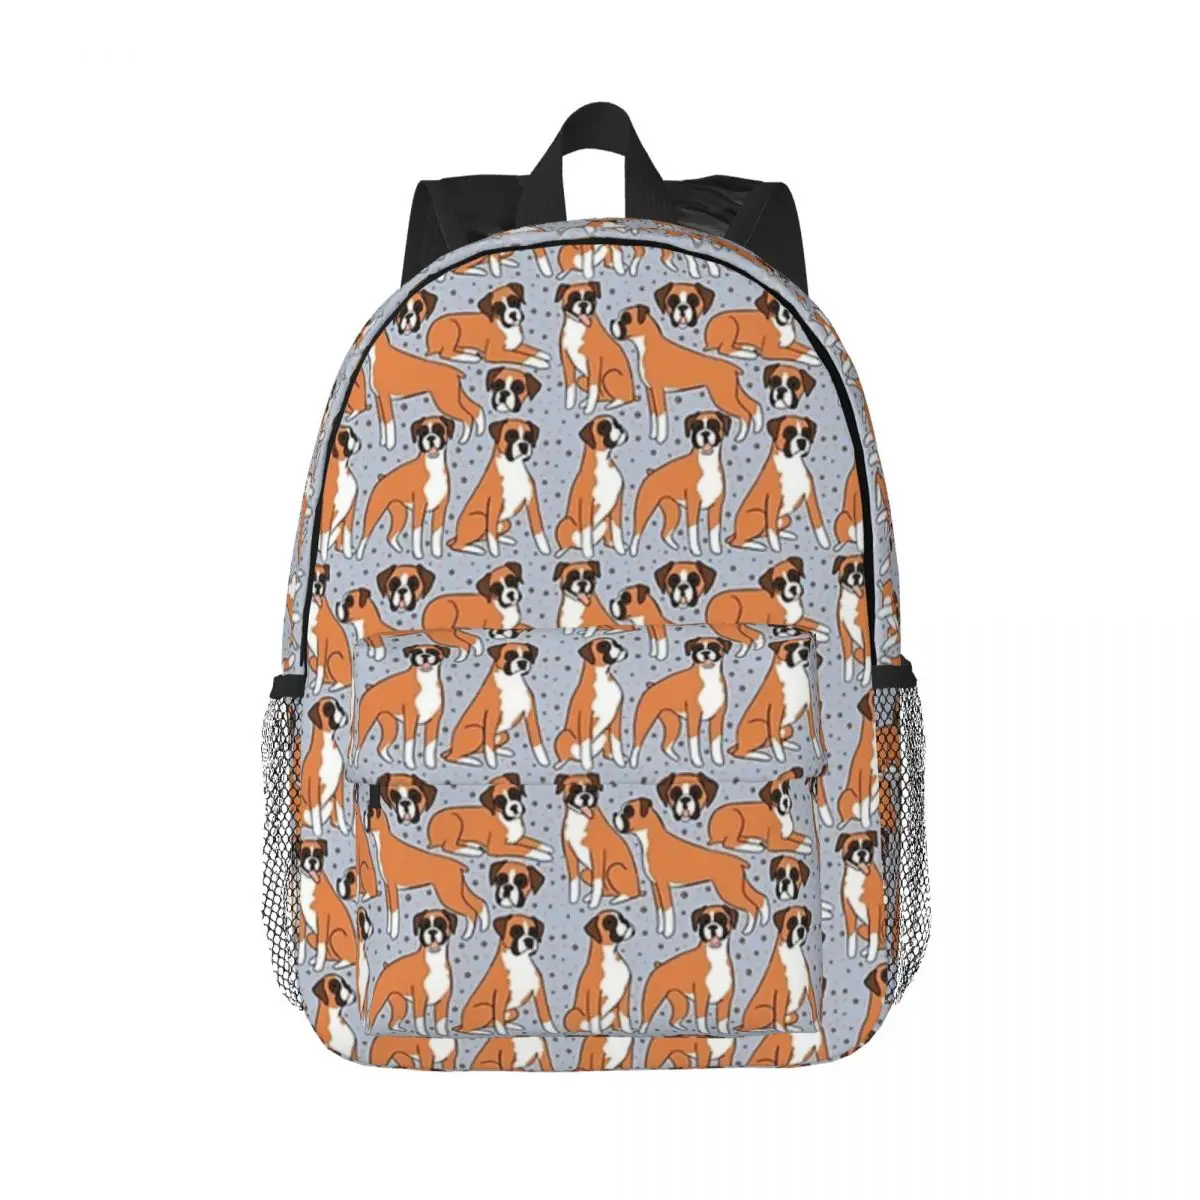 

Boxer Dog Illustration Pattern Backpack Boy Girl Bookbag Cartoon Children School Bag Travel Rucksack Shoulder Bag Large Capacity